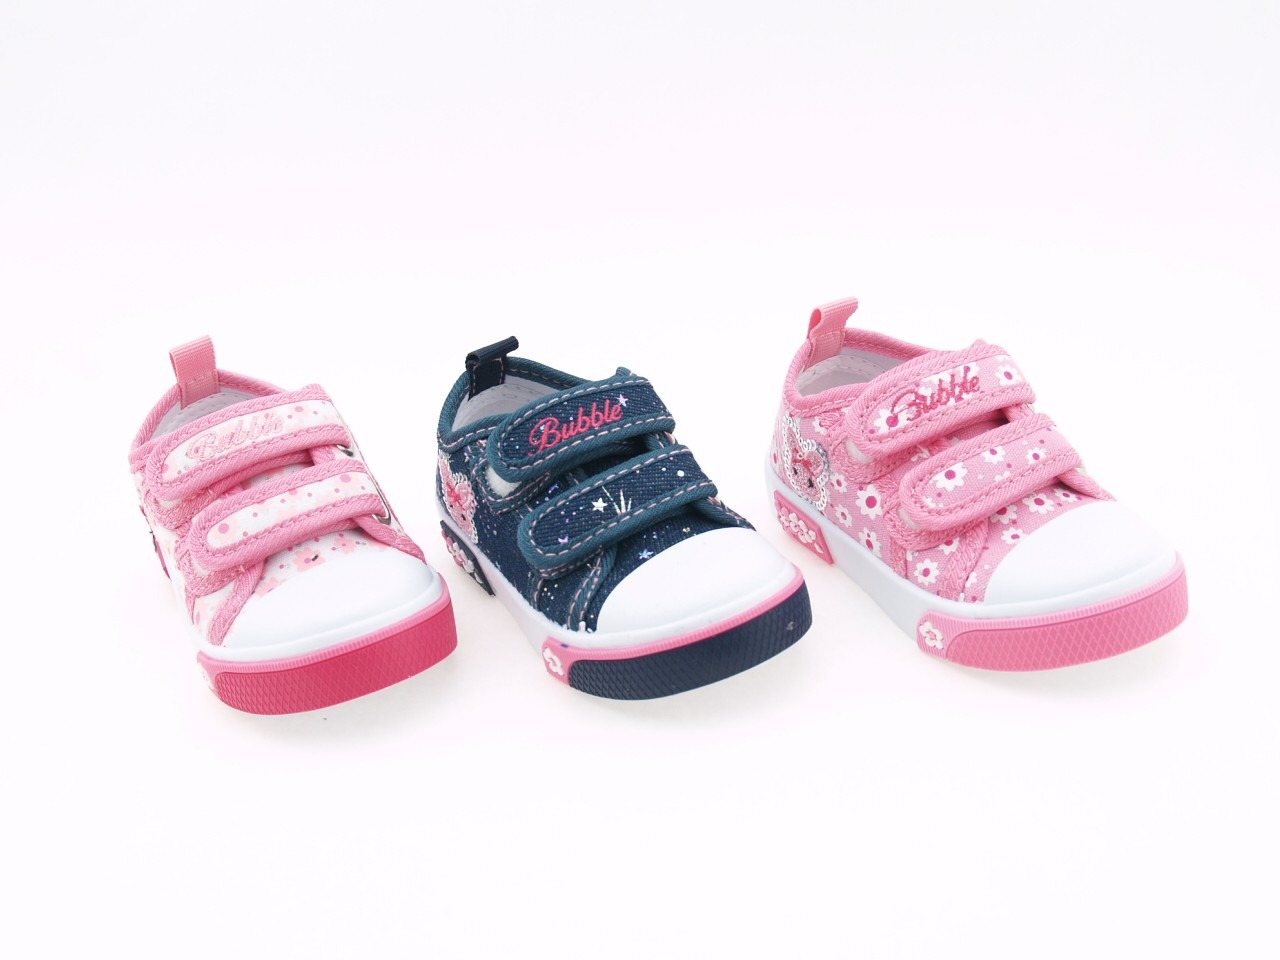 Zapatillas lona niña | El calzado para verano - Pequeña Huella